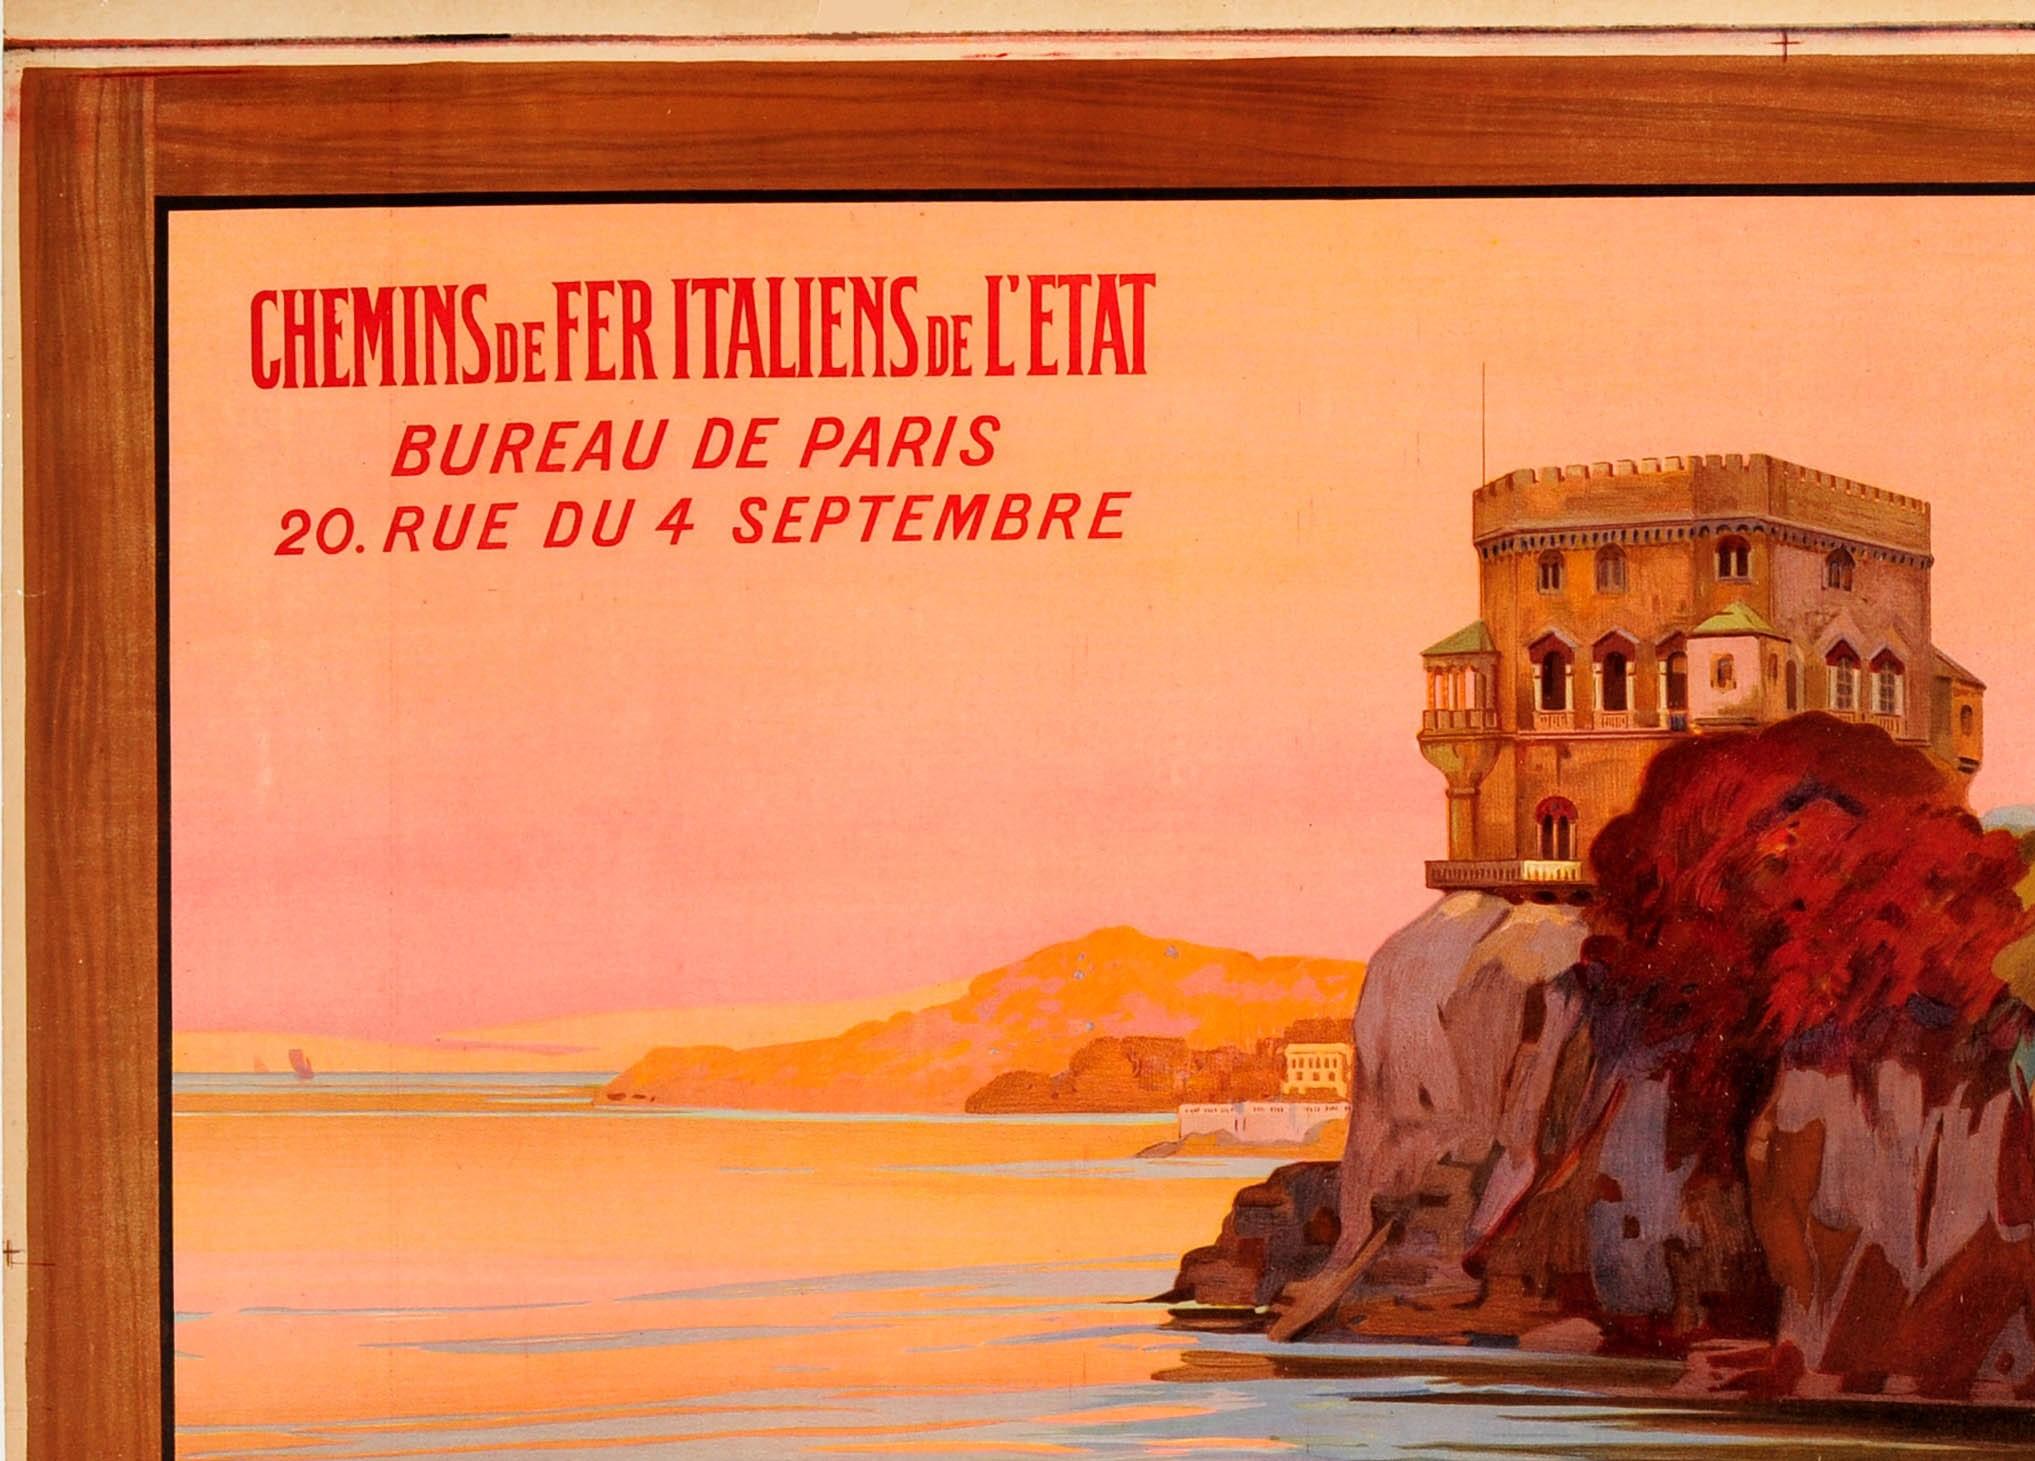 Großes originales antikes Reise-Werbeplakat für die italienische Riviera Italien / Riviera Ligure Italia mit dem Zug / Chemins de Fer Italiens de l'Etat (Italienische Staatsbahnen) mit einem atemberaubenden Bild von Enrico Grimaldi (1879-1966) des